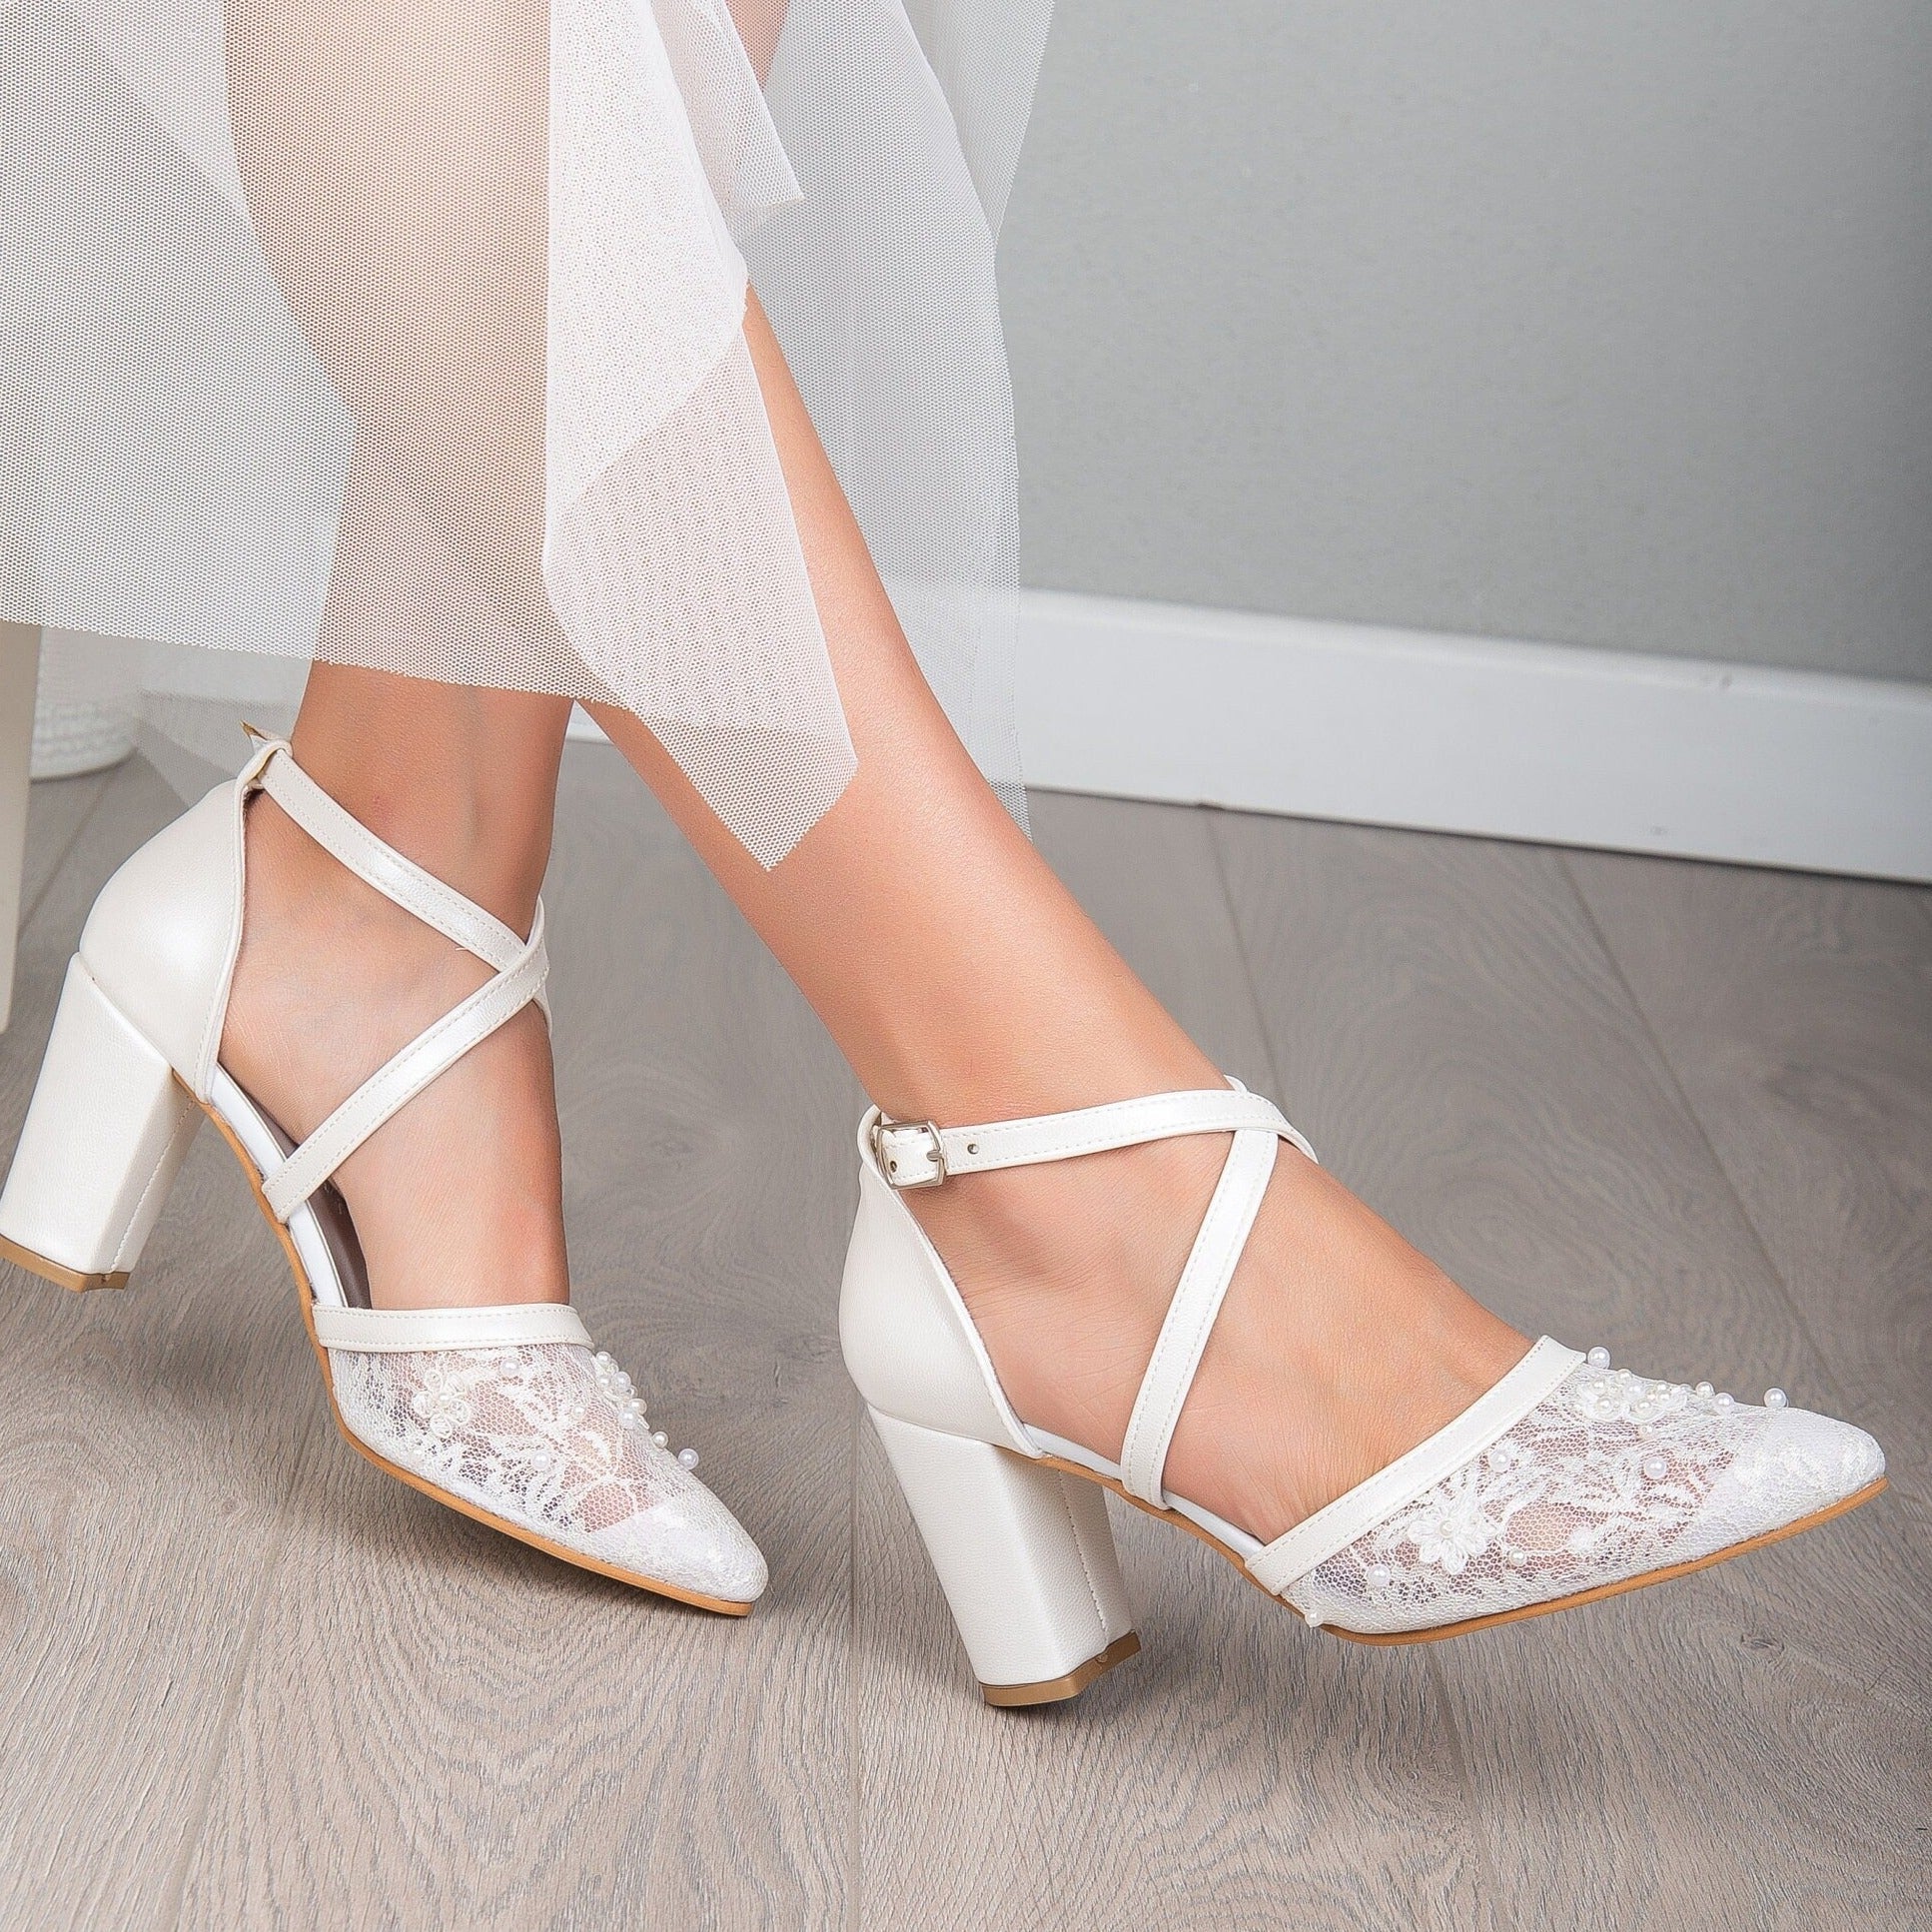 Lea - Lace Wedding Shoes